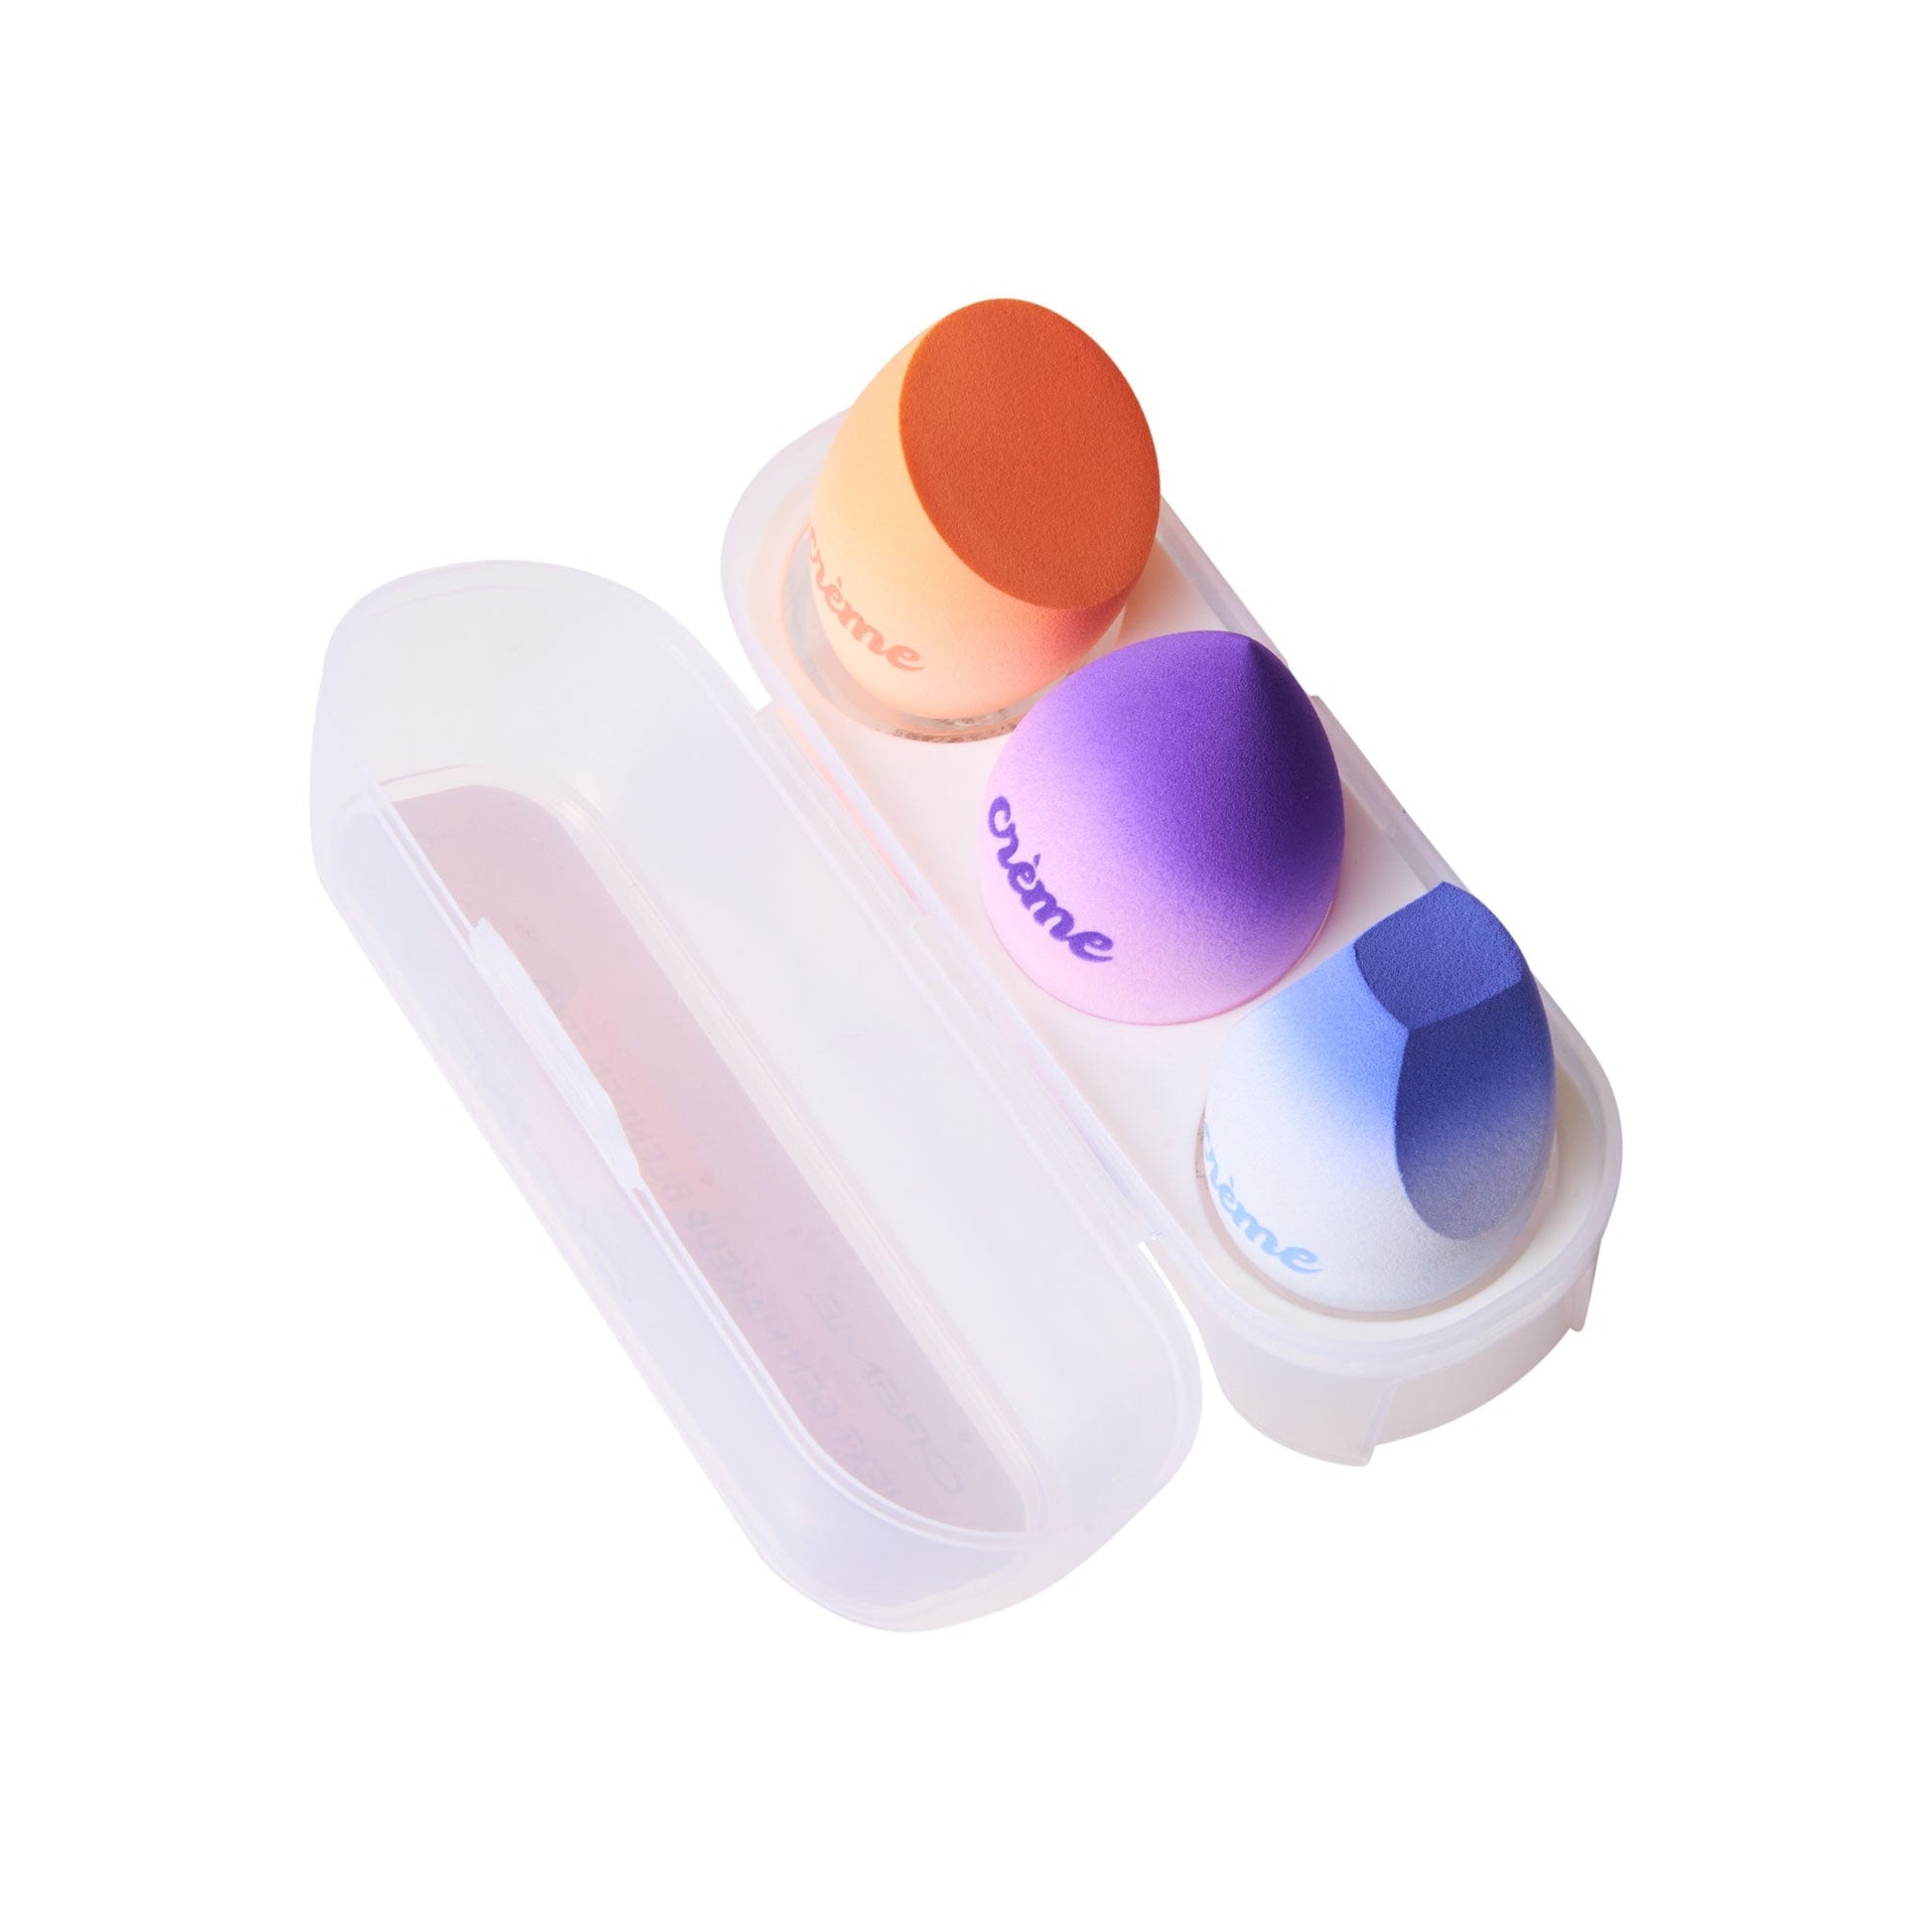 The Crème Shop Next Gen Makeup Blender Trio (Purple & Peach) Blending Sponges with reusable storage case